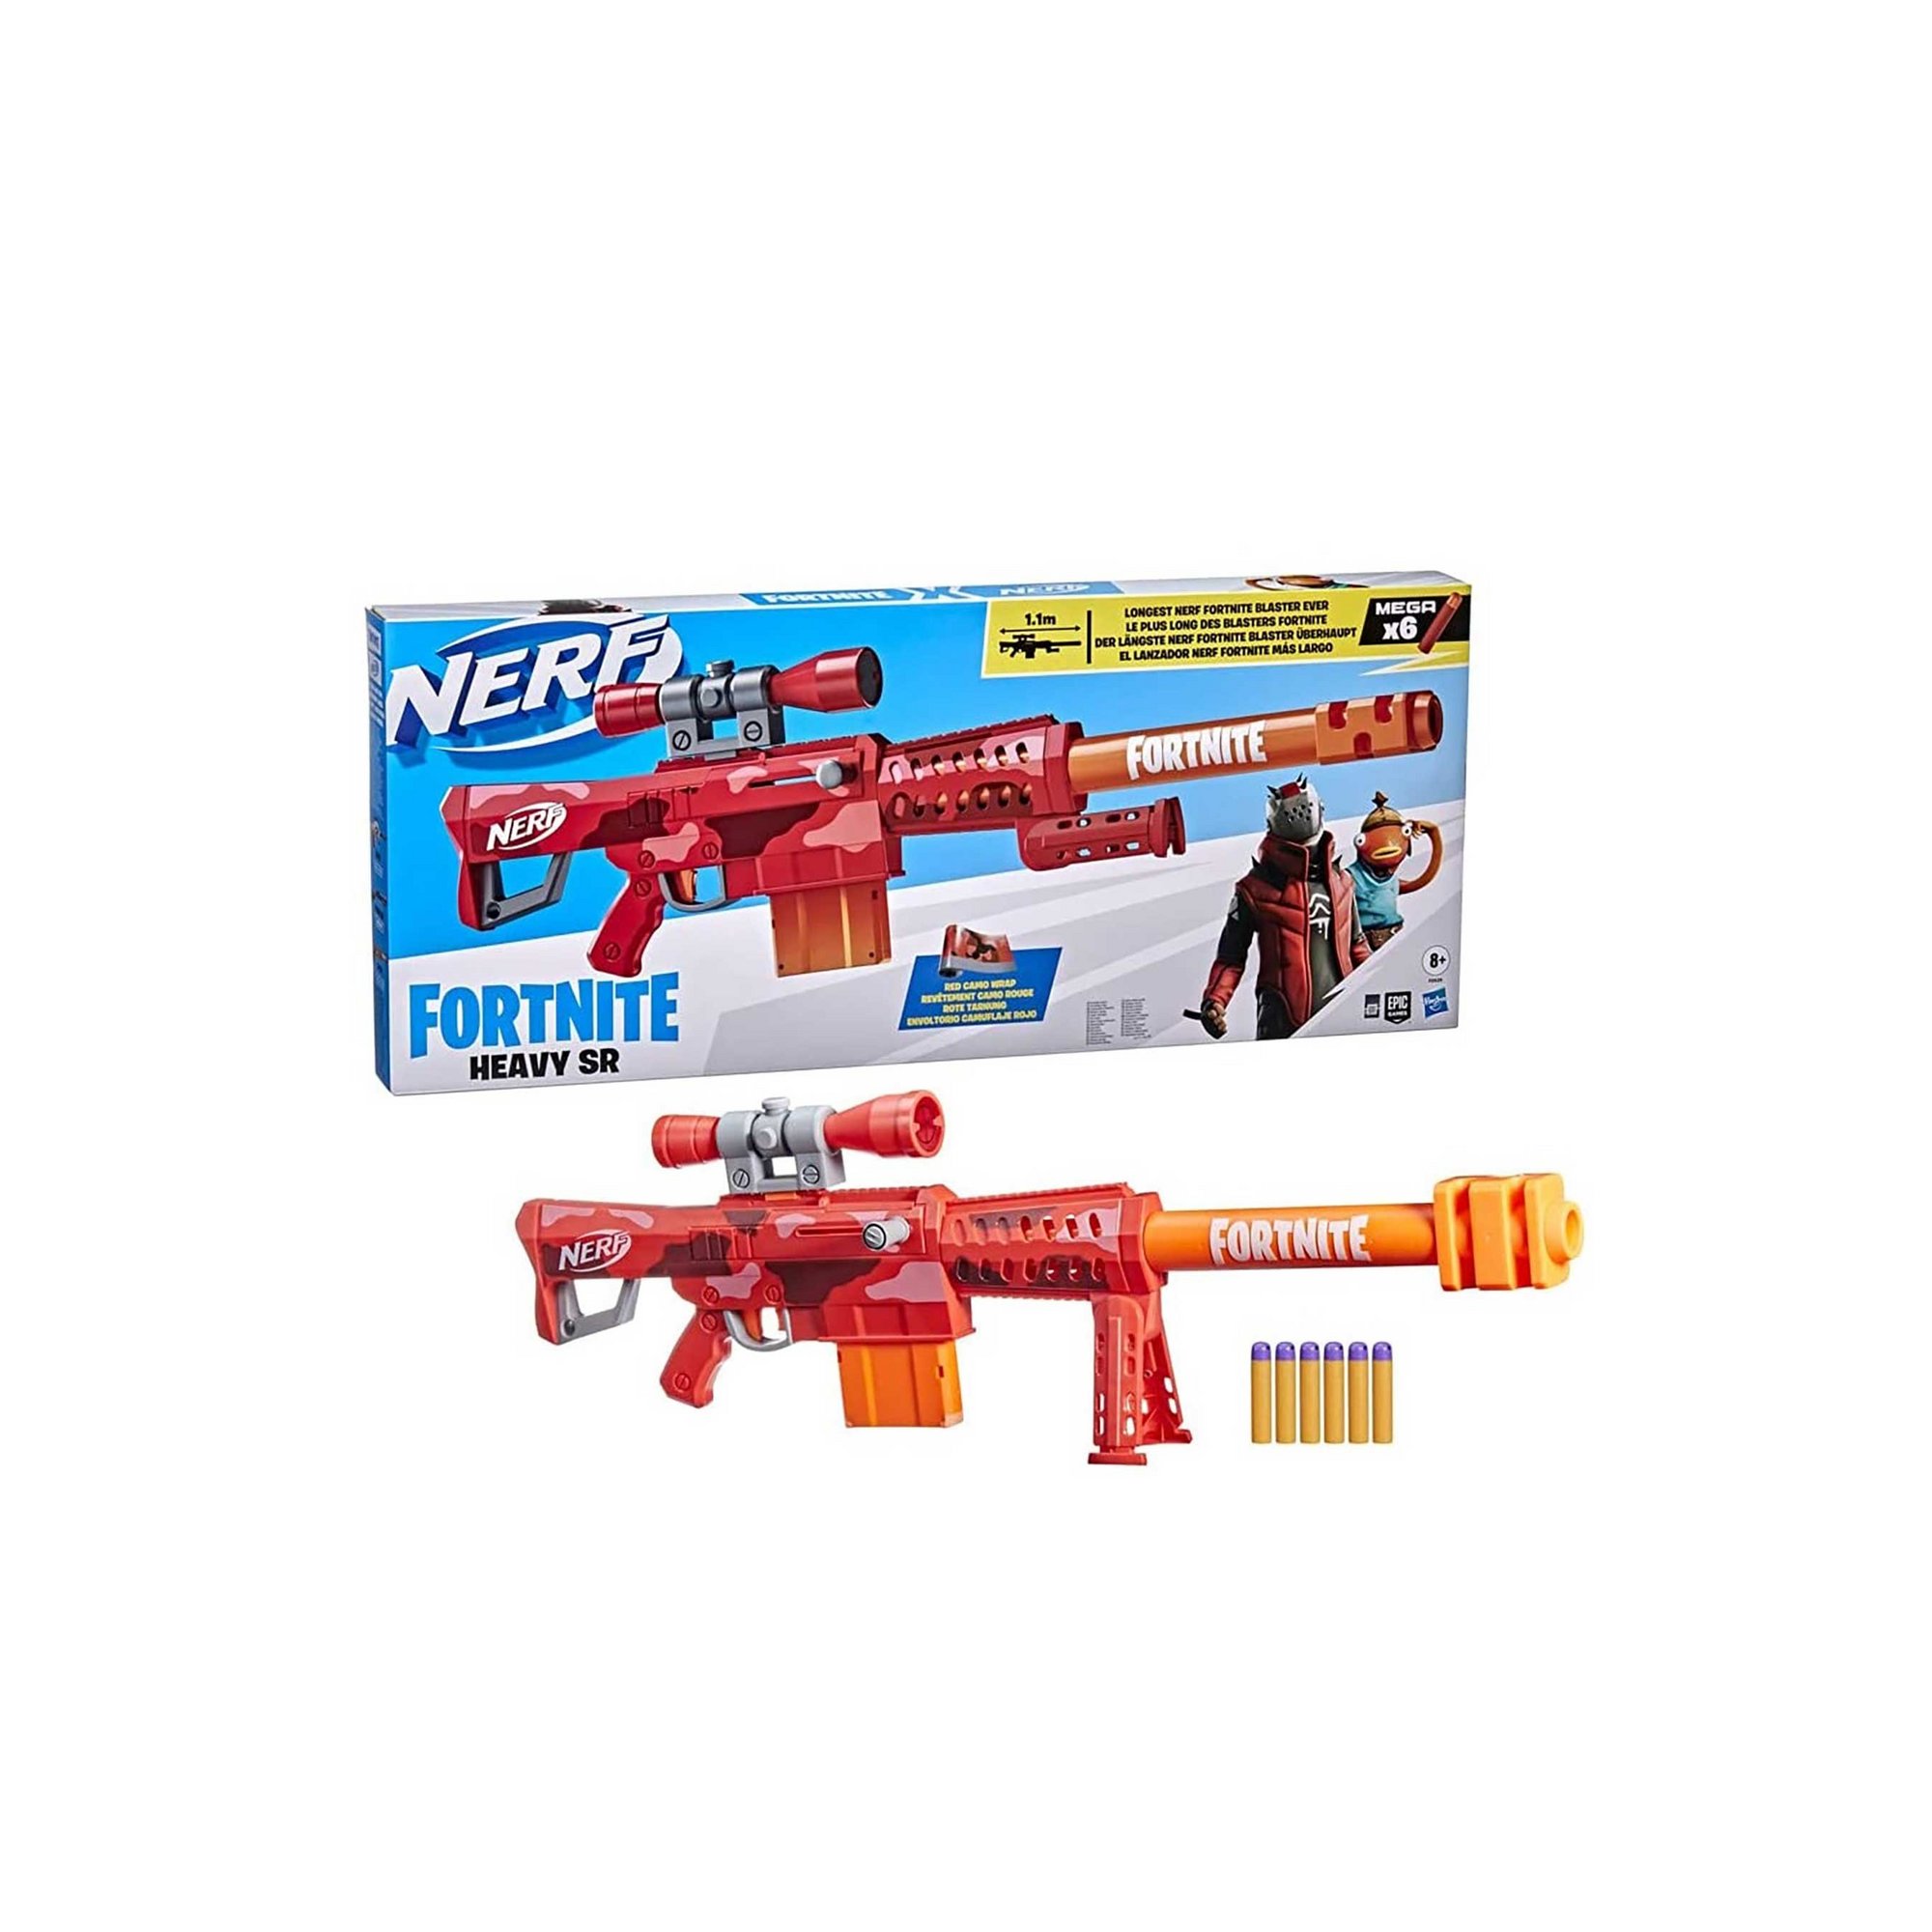 NERF Nerf Fortnite Heavy SR Blaster